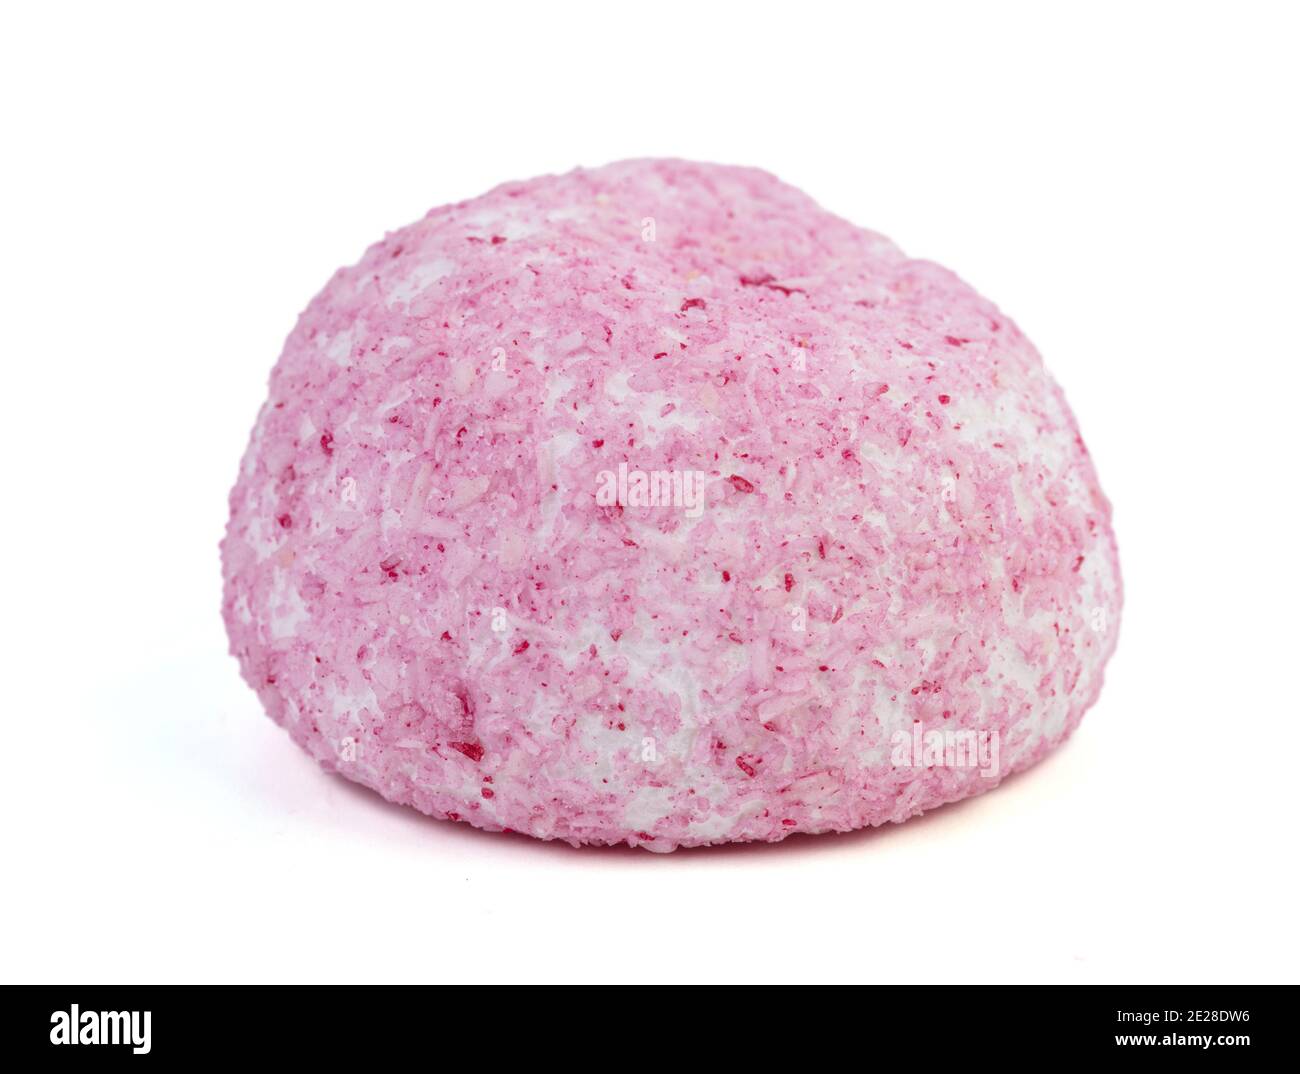 Bonbon de boule de noix de coco rose sur fond blanc Photo Stock - Alamy